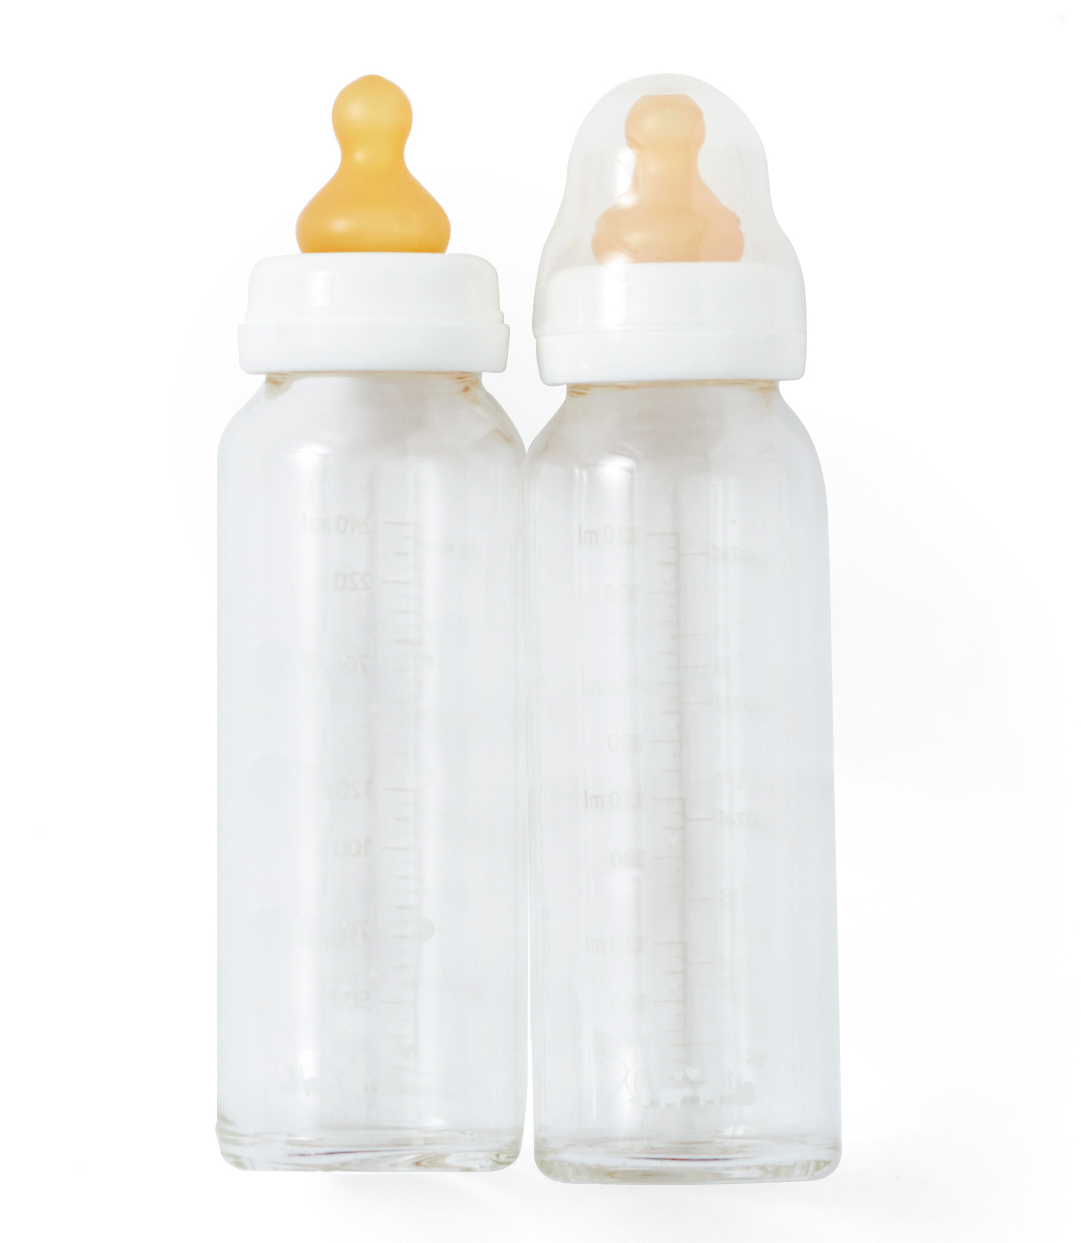 glass infant bottles